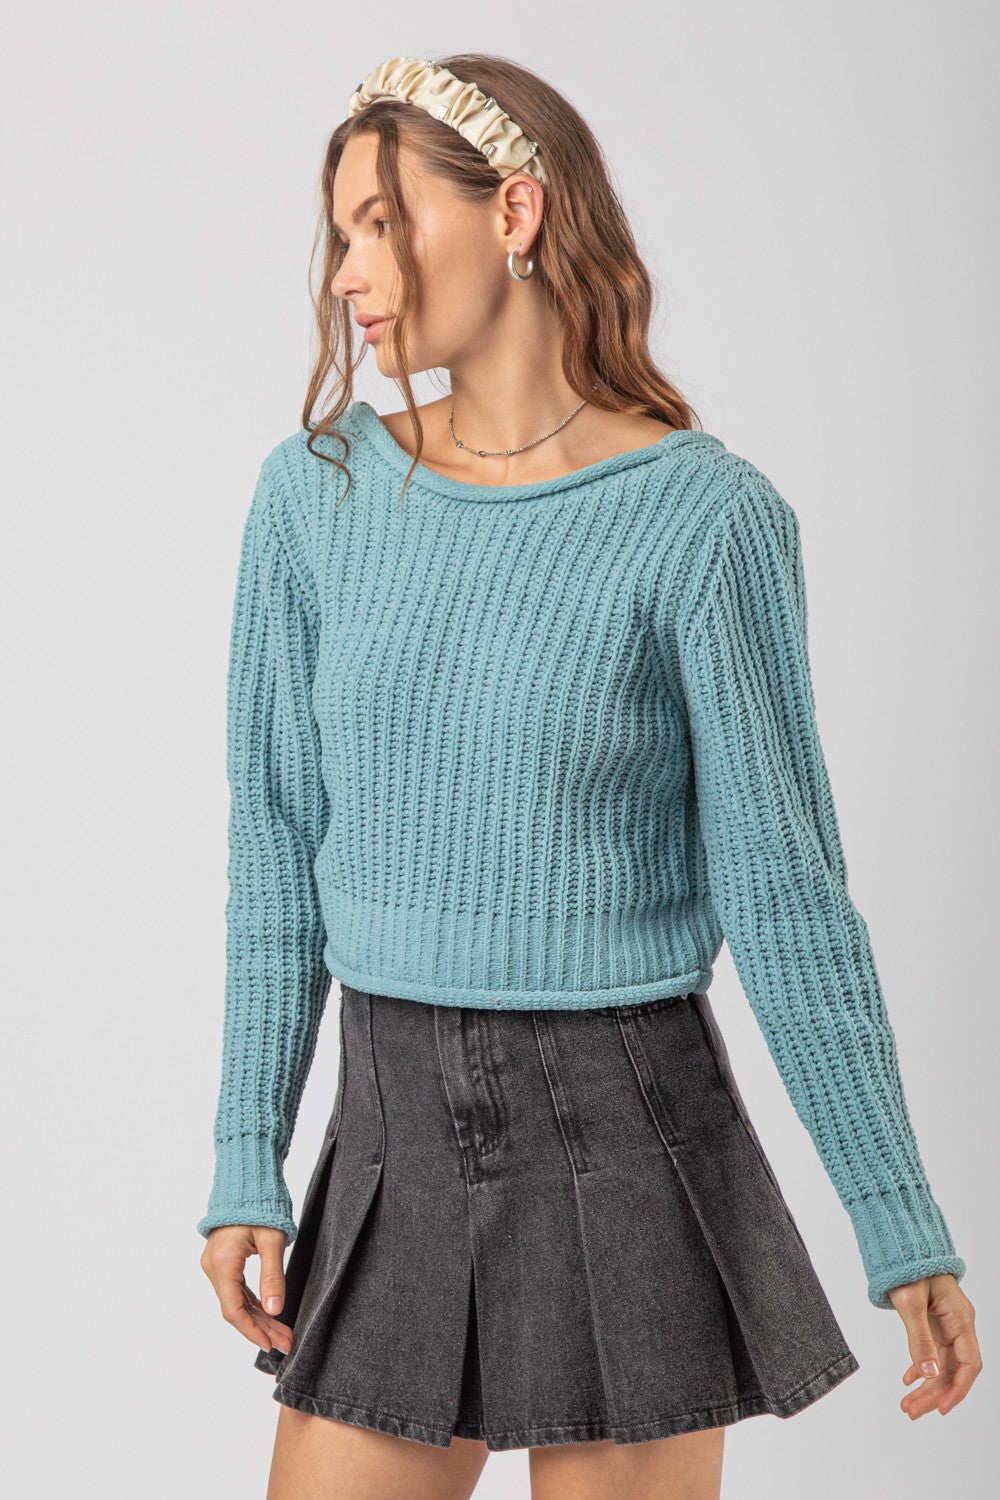 Effortless Knit Sweater